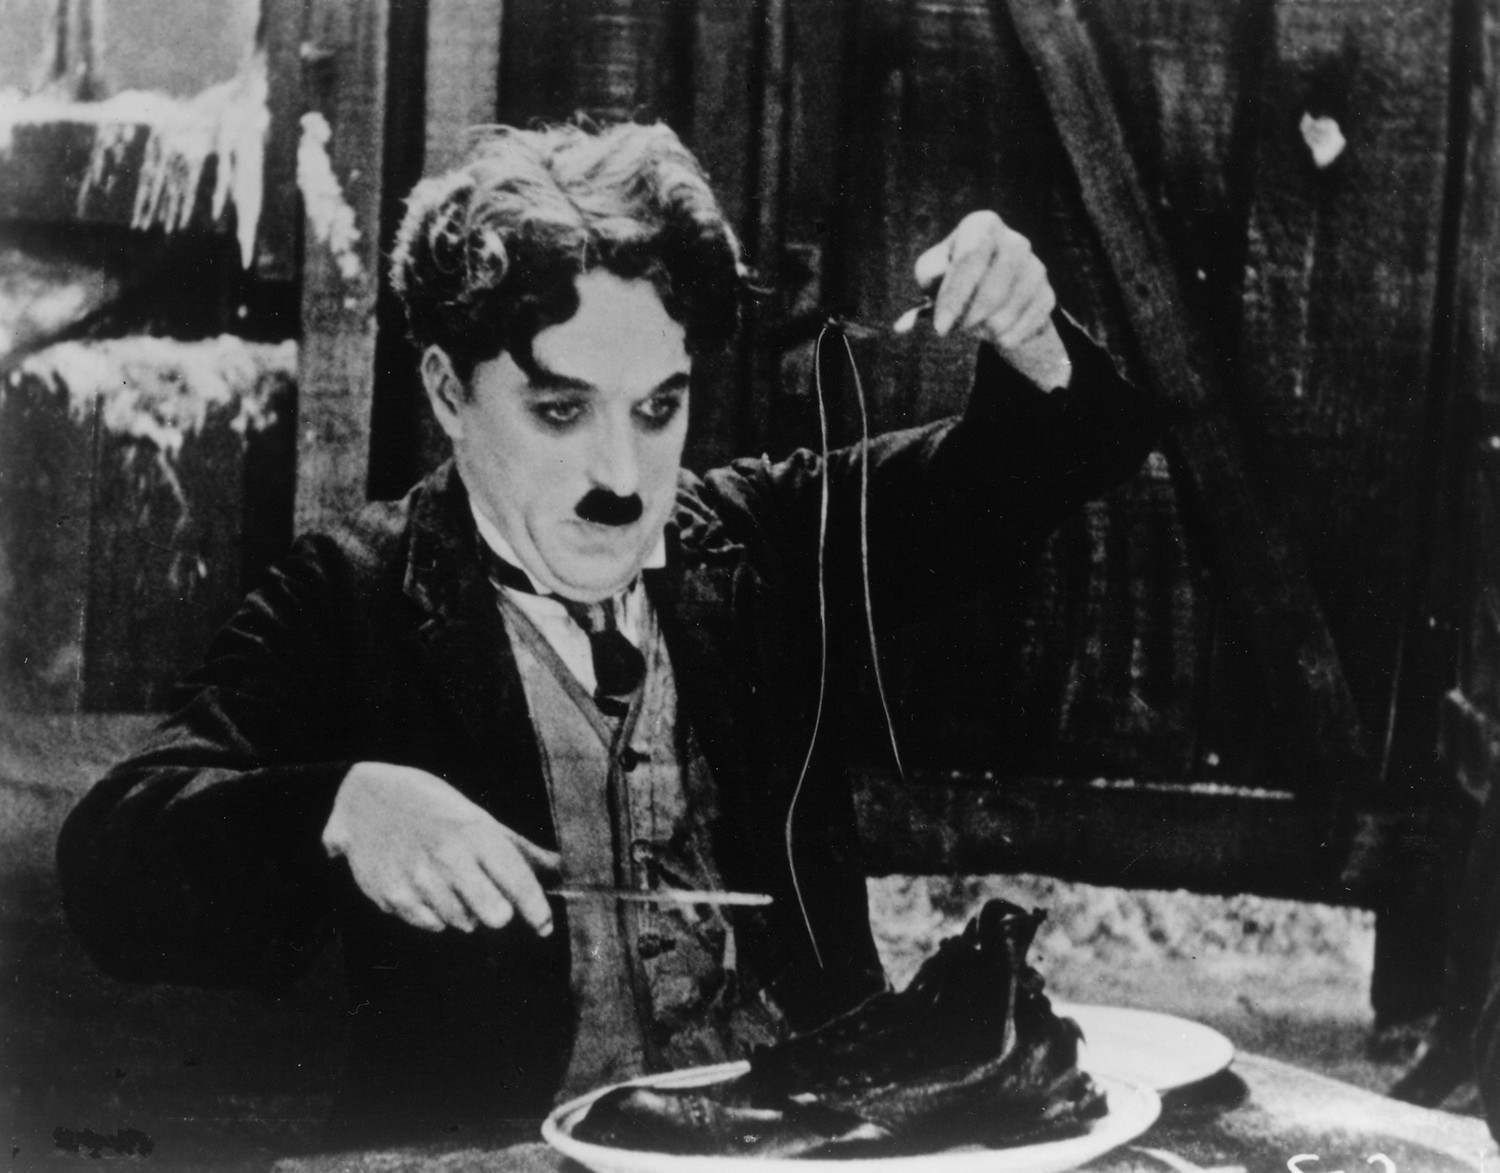 Гитлер и бродяга: главные фильмы Чарли Чаплина история кино,кино,киноактеры,кинохроника,моровой кинематограф,художественное кино